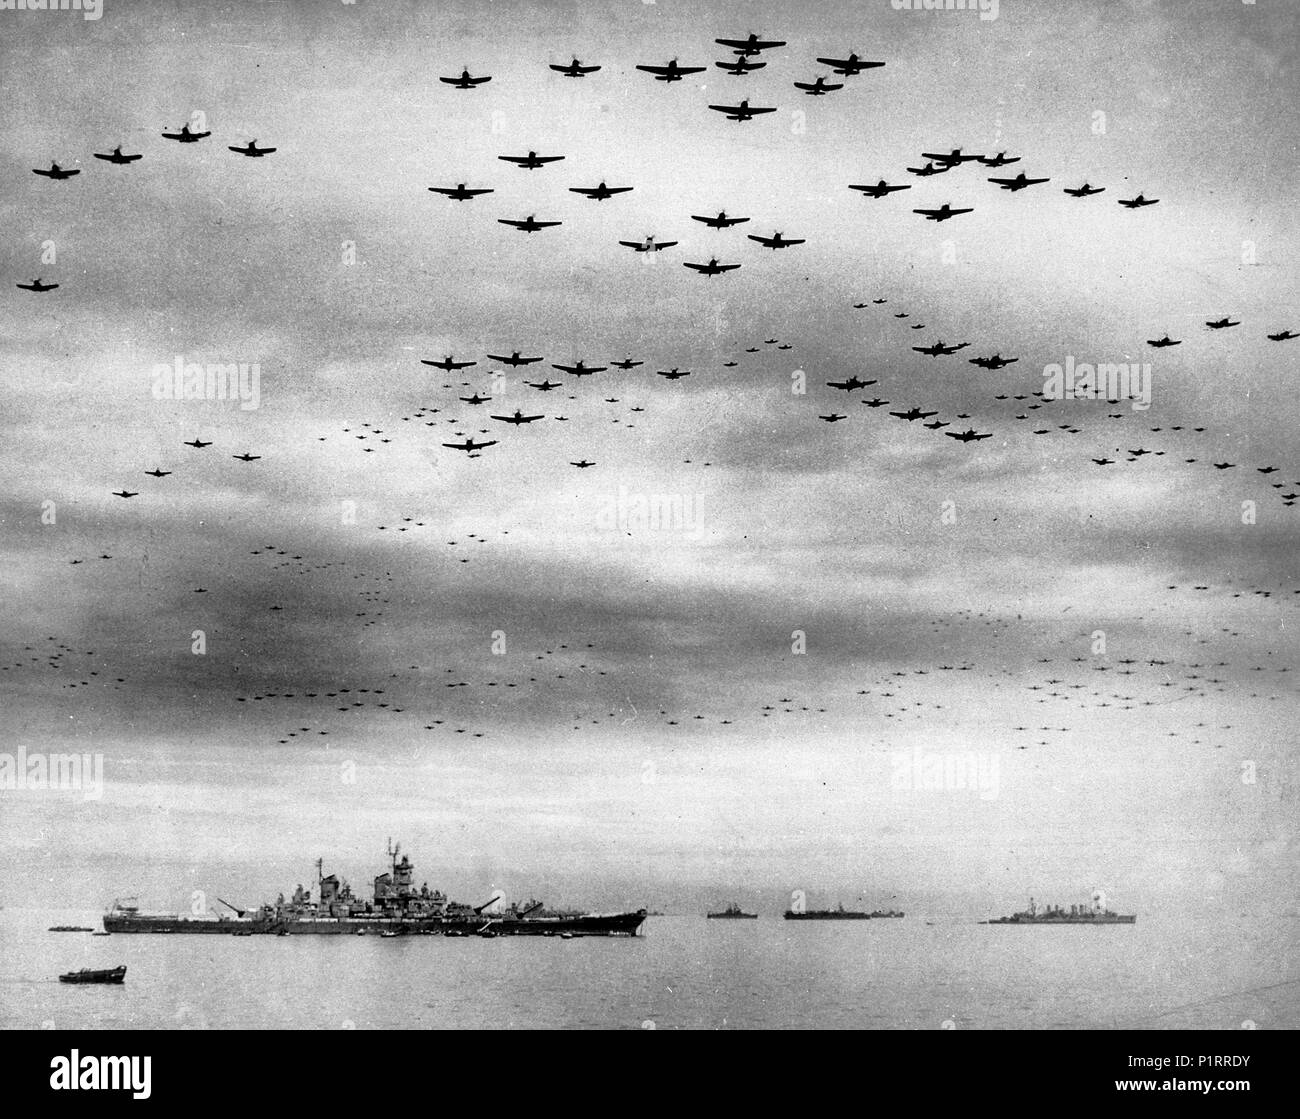 Della resa del Giappone, 2 Settembre 1945: U.S. Navy carrier aerei di volare in formazione oltre gli Stati Uniti e la flotta britannica nella Baia di Tokyo durante le cerimonie di consegna. La Corazzata USS Missouri (BB-63), dove le cerimonie hanno avuto luogo, è a sinistra. L'incrociatore leggero USS Detroit (CL-8) è nella giusta distanza. Aeromobile includono Grumman TBM Avenger, Grumman F6F Hellcat, Curtiss SB2C Helldiver e Vought F4U Corsair tipi. Settembre 2, 1945 Foto Stock